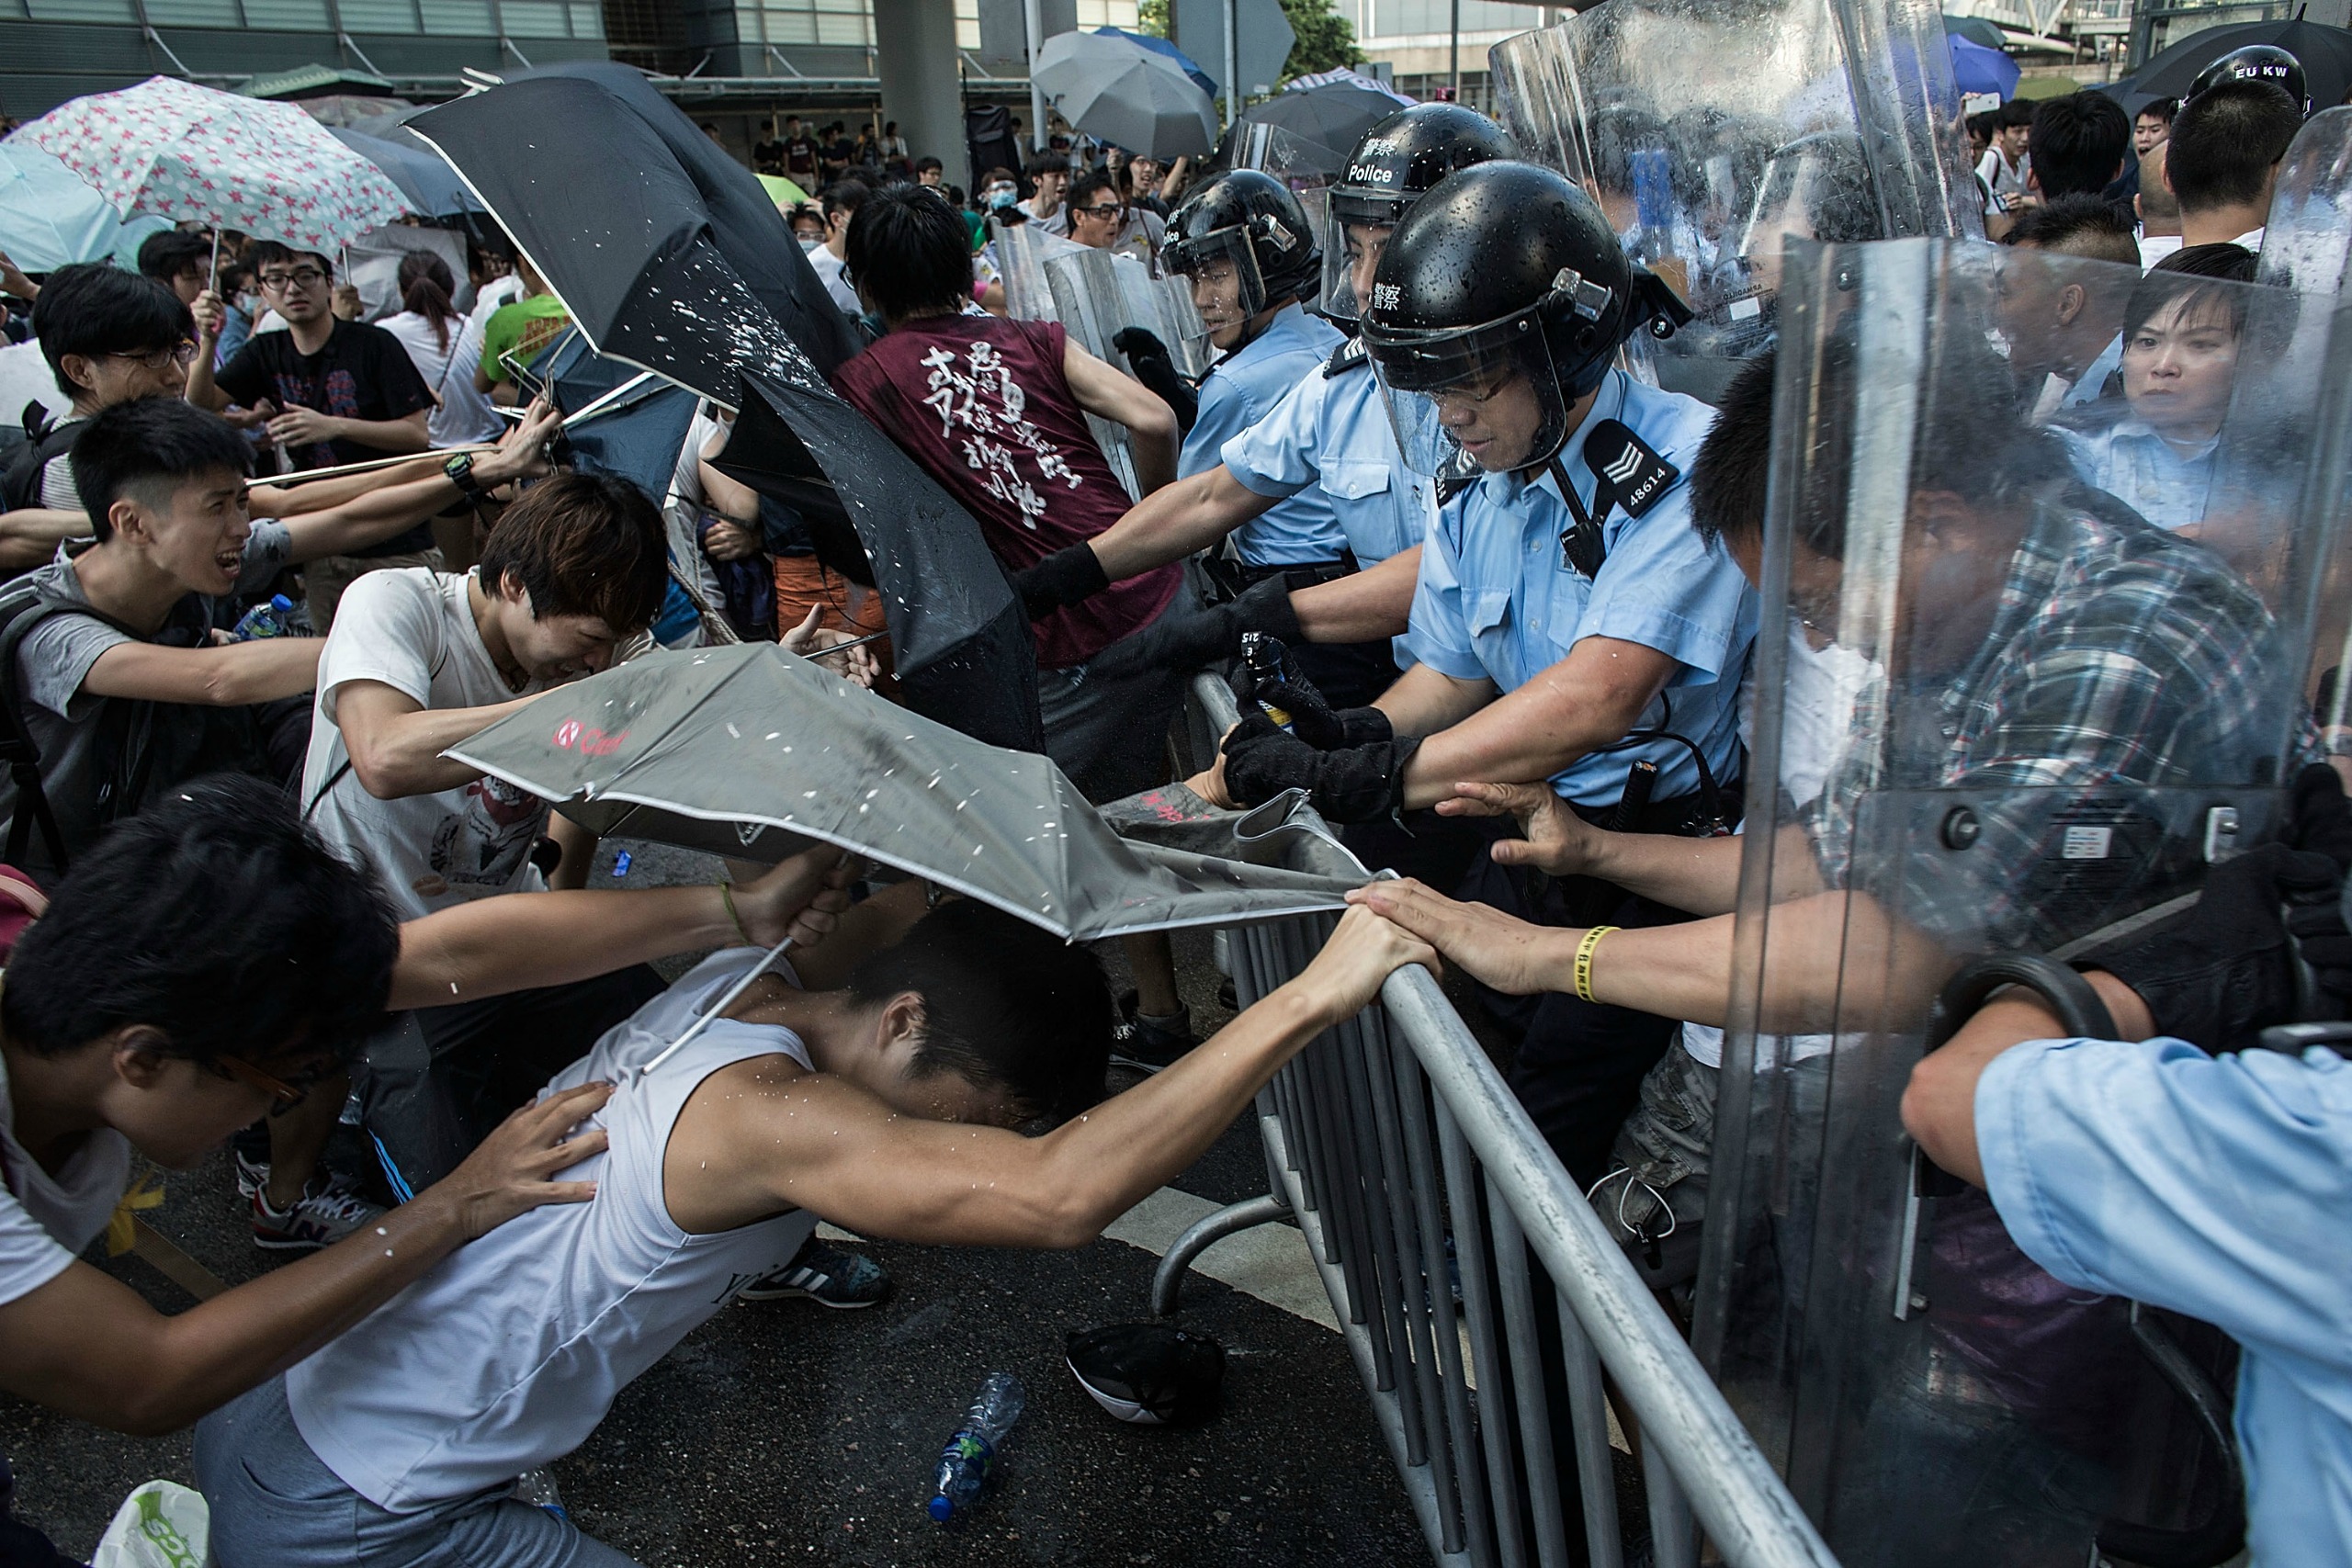 Χονγκ Κονγκ: Δεν παραδίδονται οι φοιτητές στο Πολυτεχνείο -Έκκληση για τρόφιμα και νερό